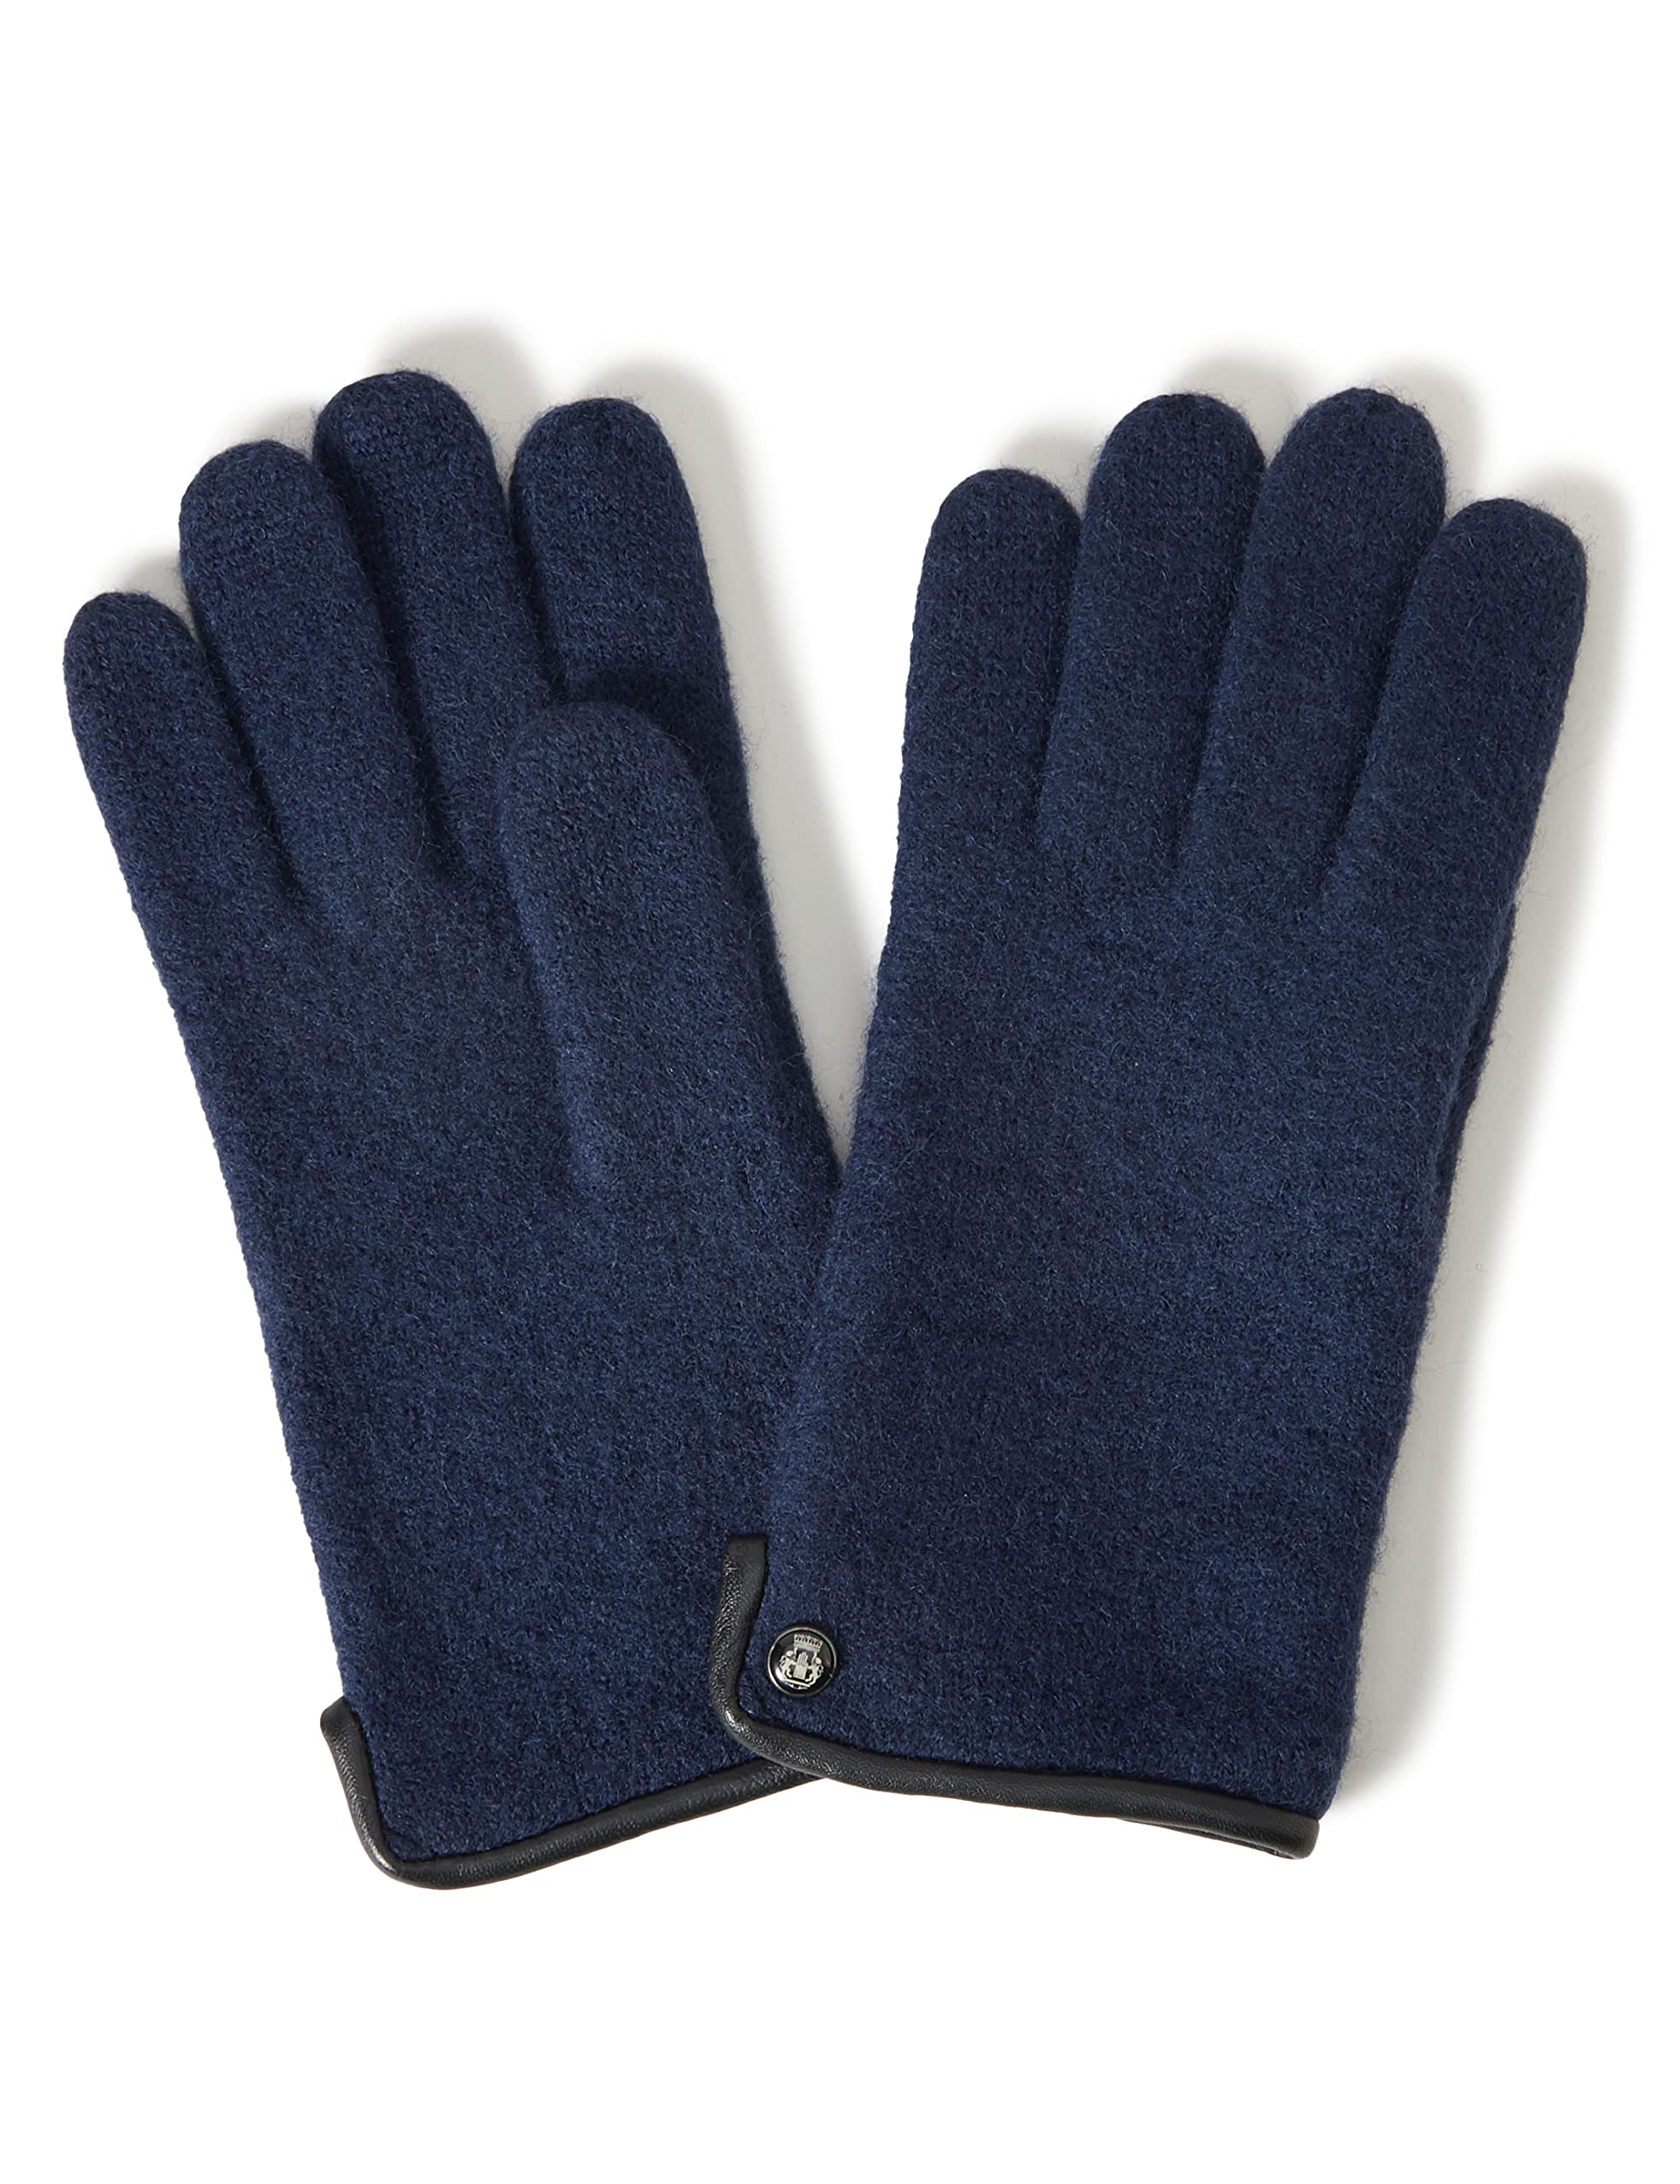 Roeckl Herren Klassischer Walkhandschuh Handschuhe, Schwarz (Navy 590), 8